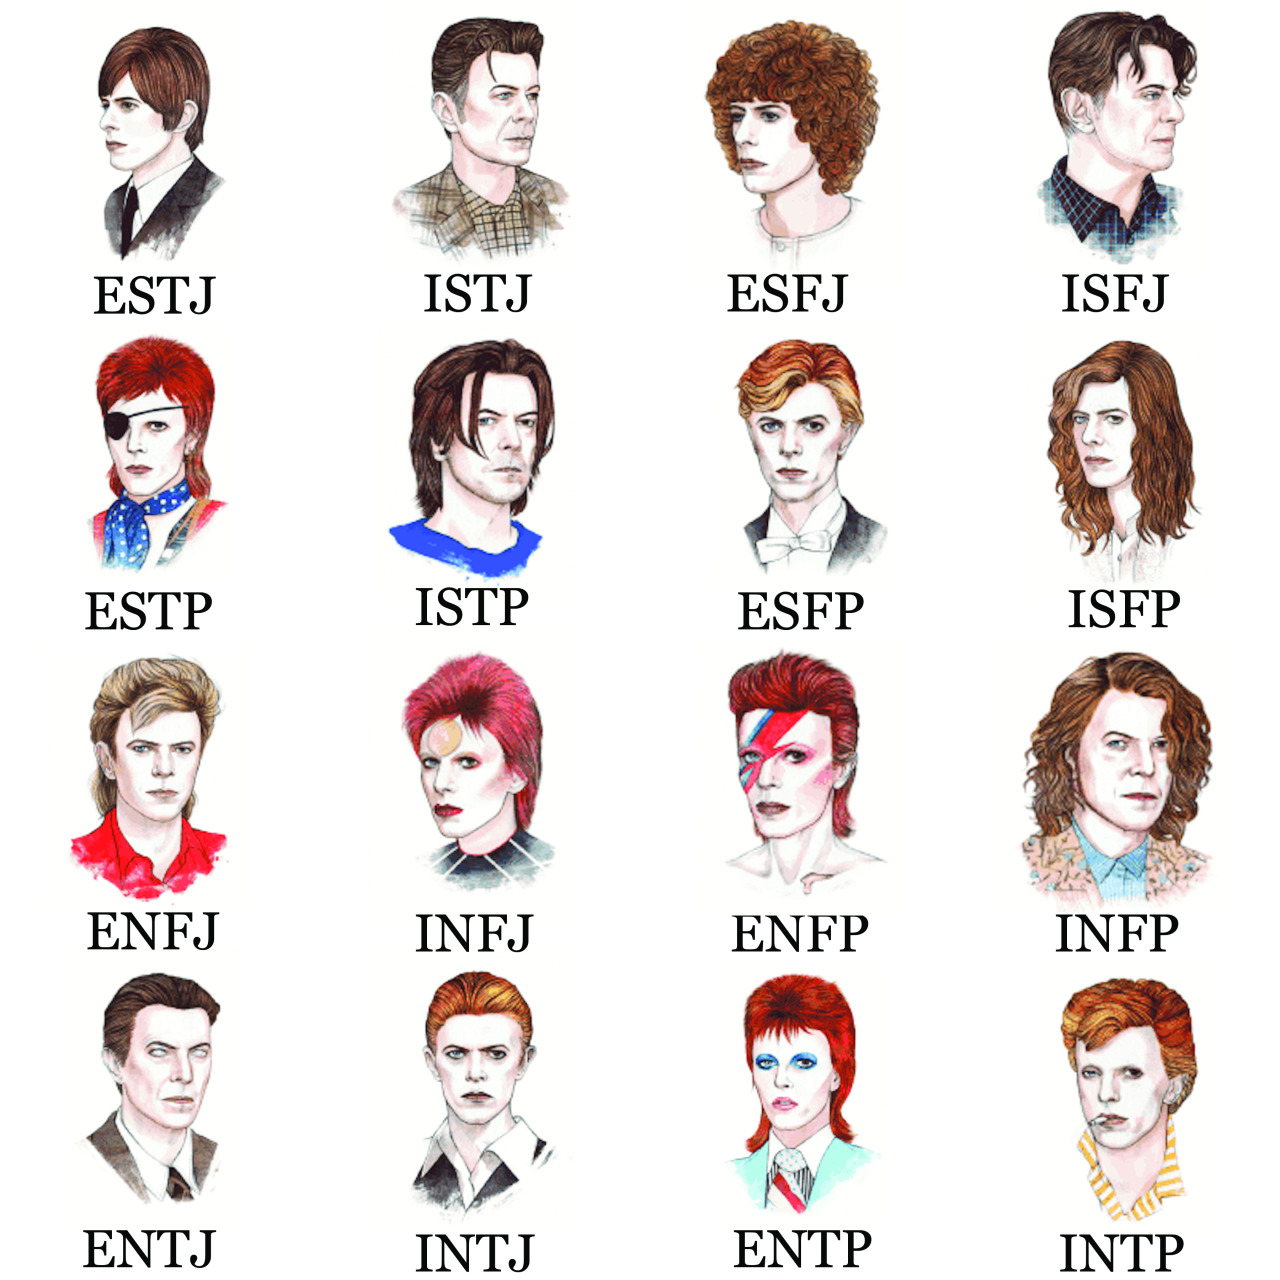 Kol Mikaelson MBTI Personality Type: ESTP or ESTJ?